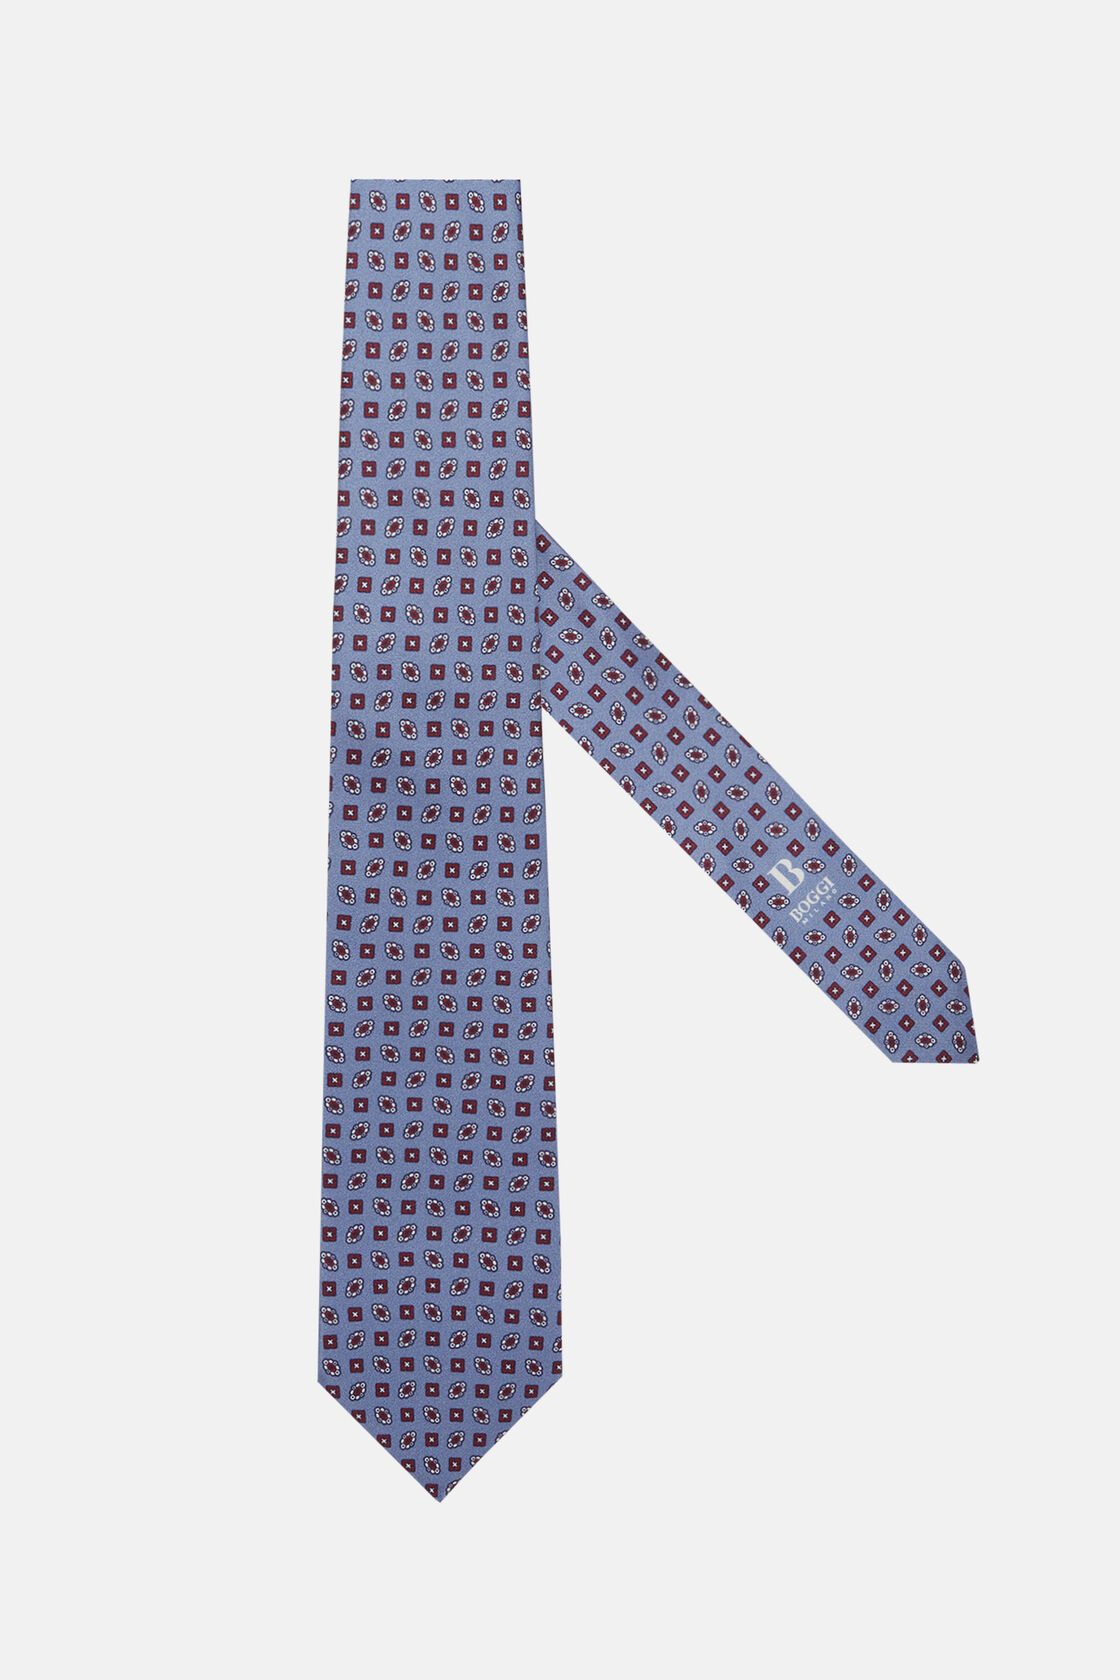 Corbata Motivo Geométrico De Seda, Azul claro, hi-res